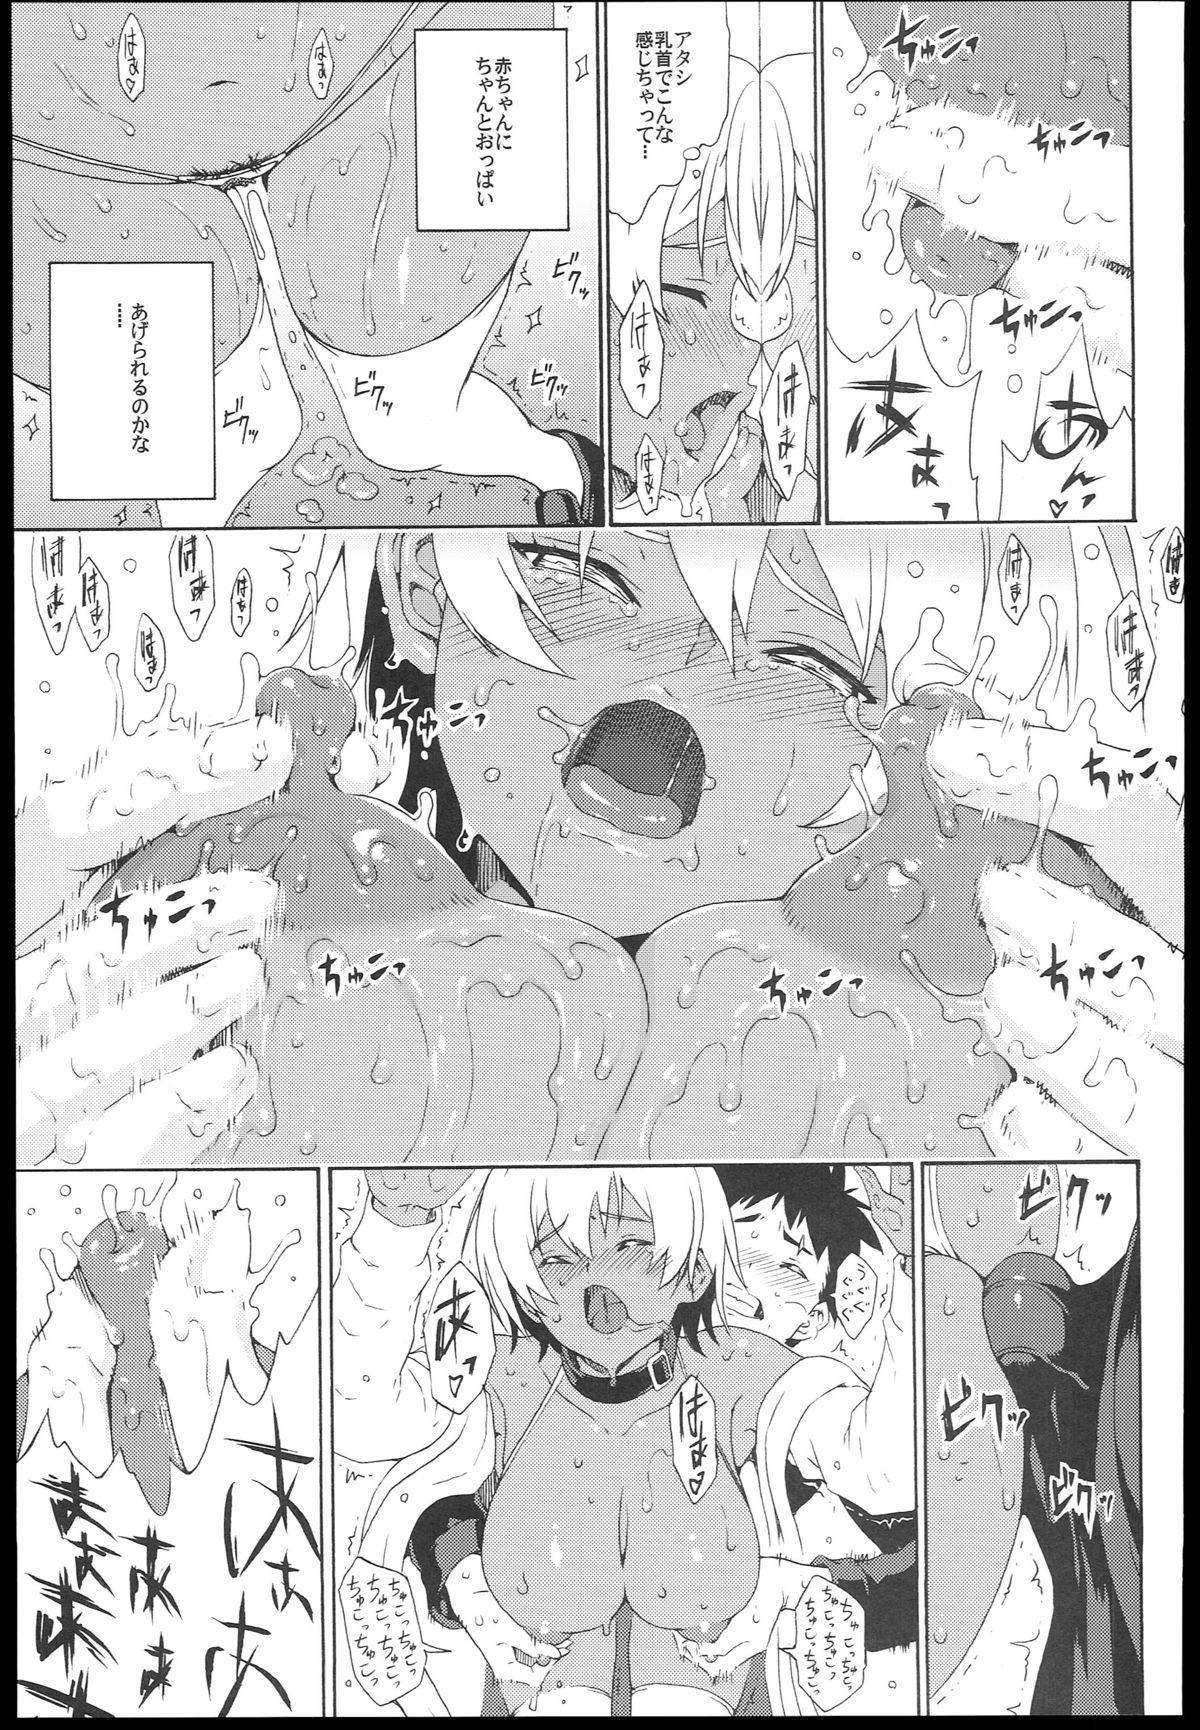 Doggystyle Porn Ikumi-chan Niku Niku - Shokugeki no soma Sensual - Page 11